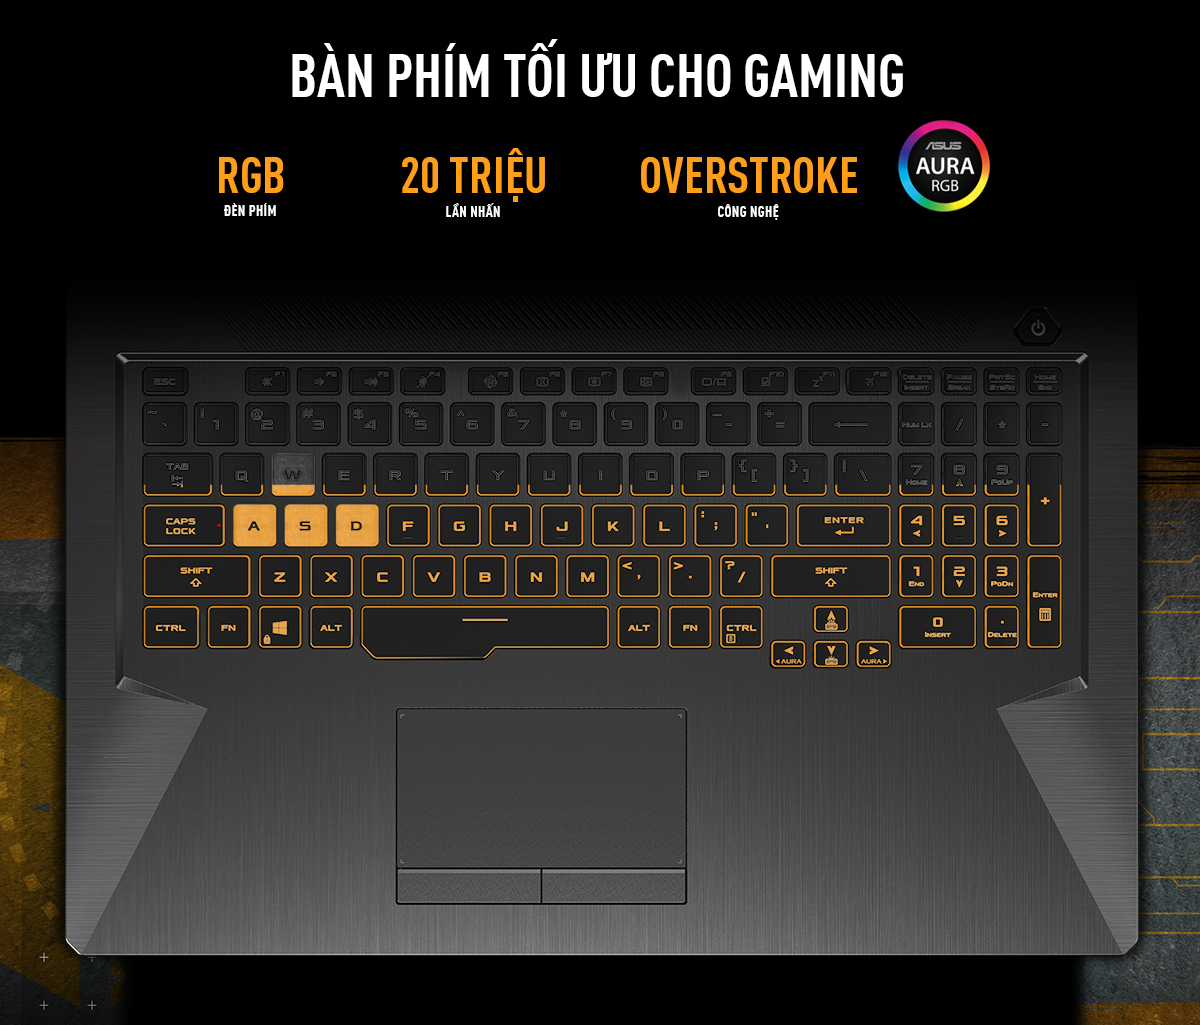 Laptop Asus TUF Gaming FX506HCB-HN139T